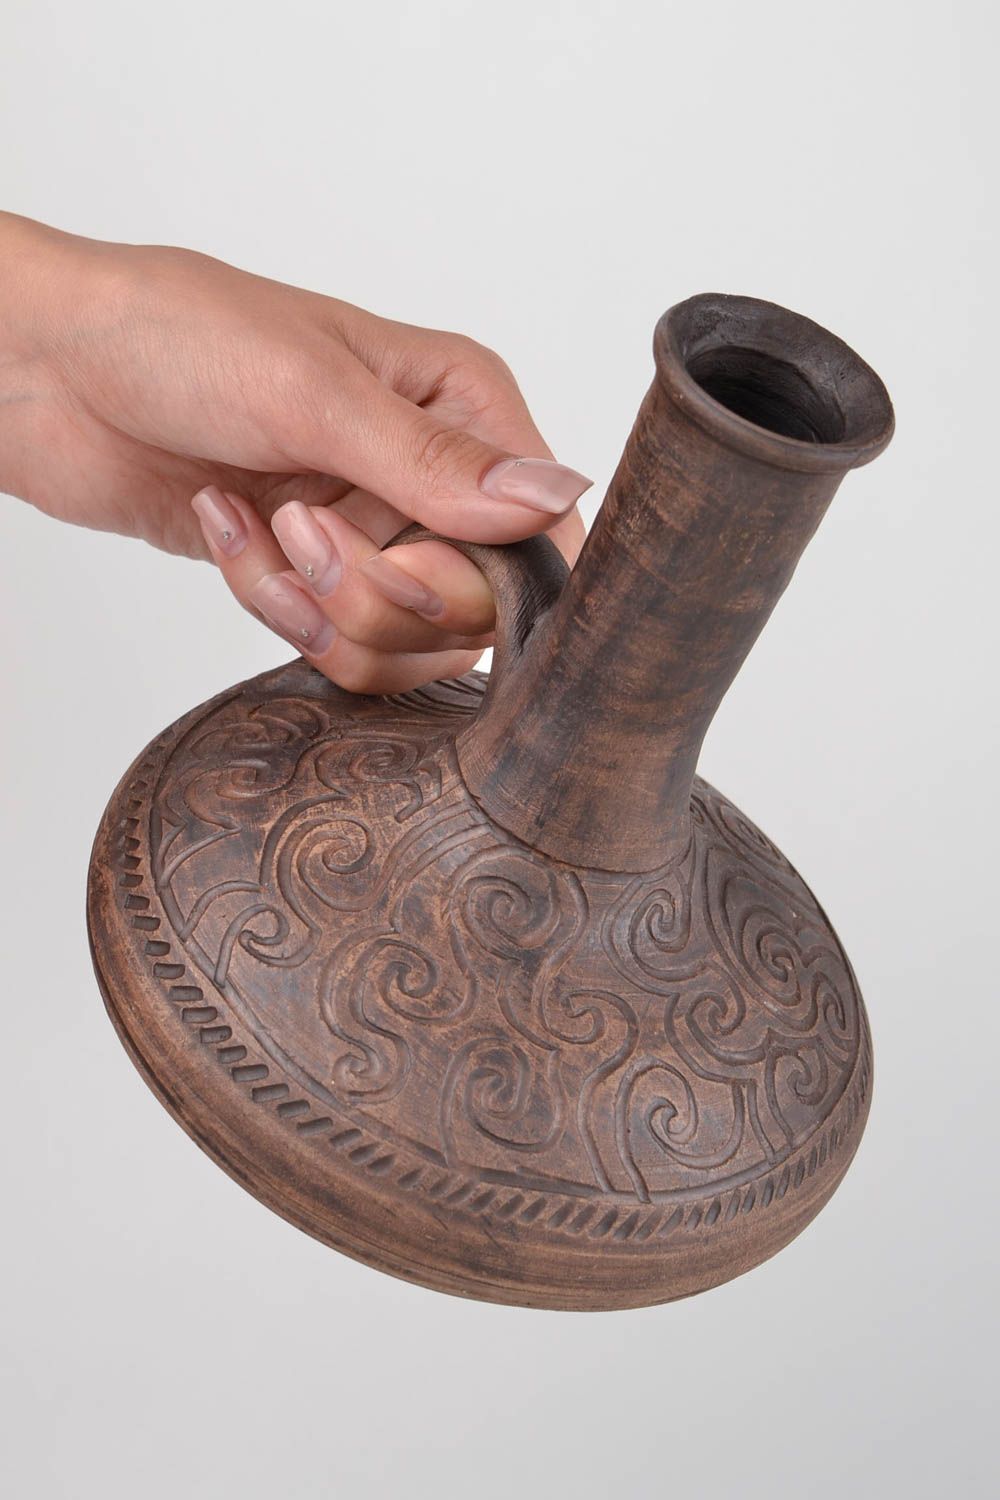 15 oz ceramic wine carafe in Arabian style 1,7 lb photo 2